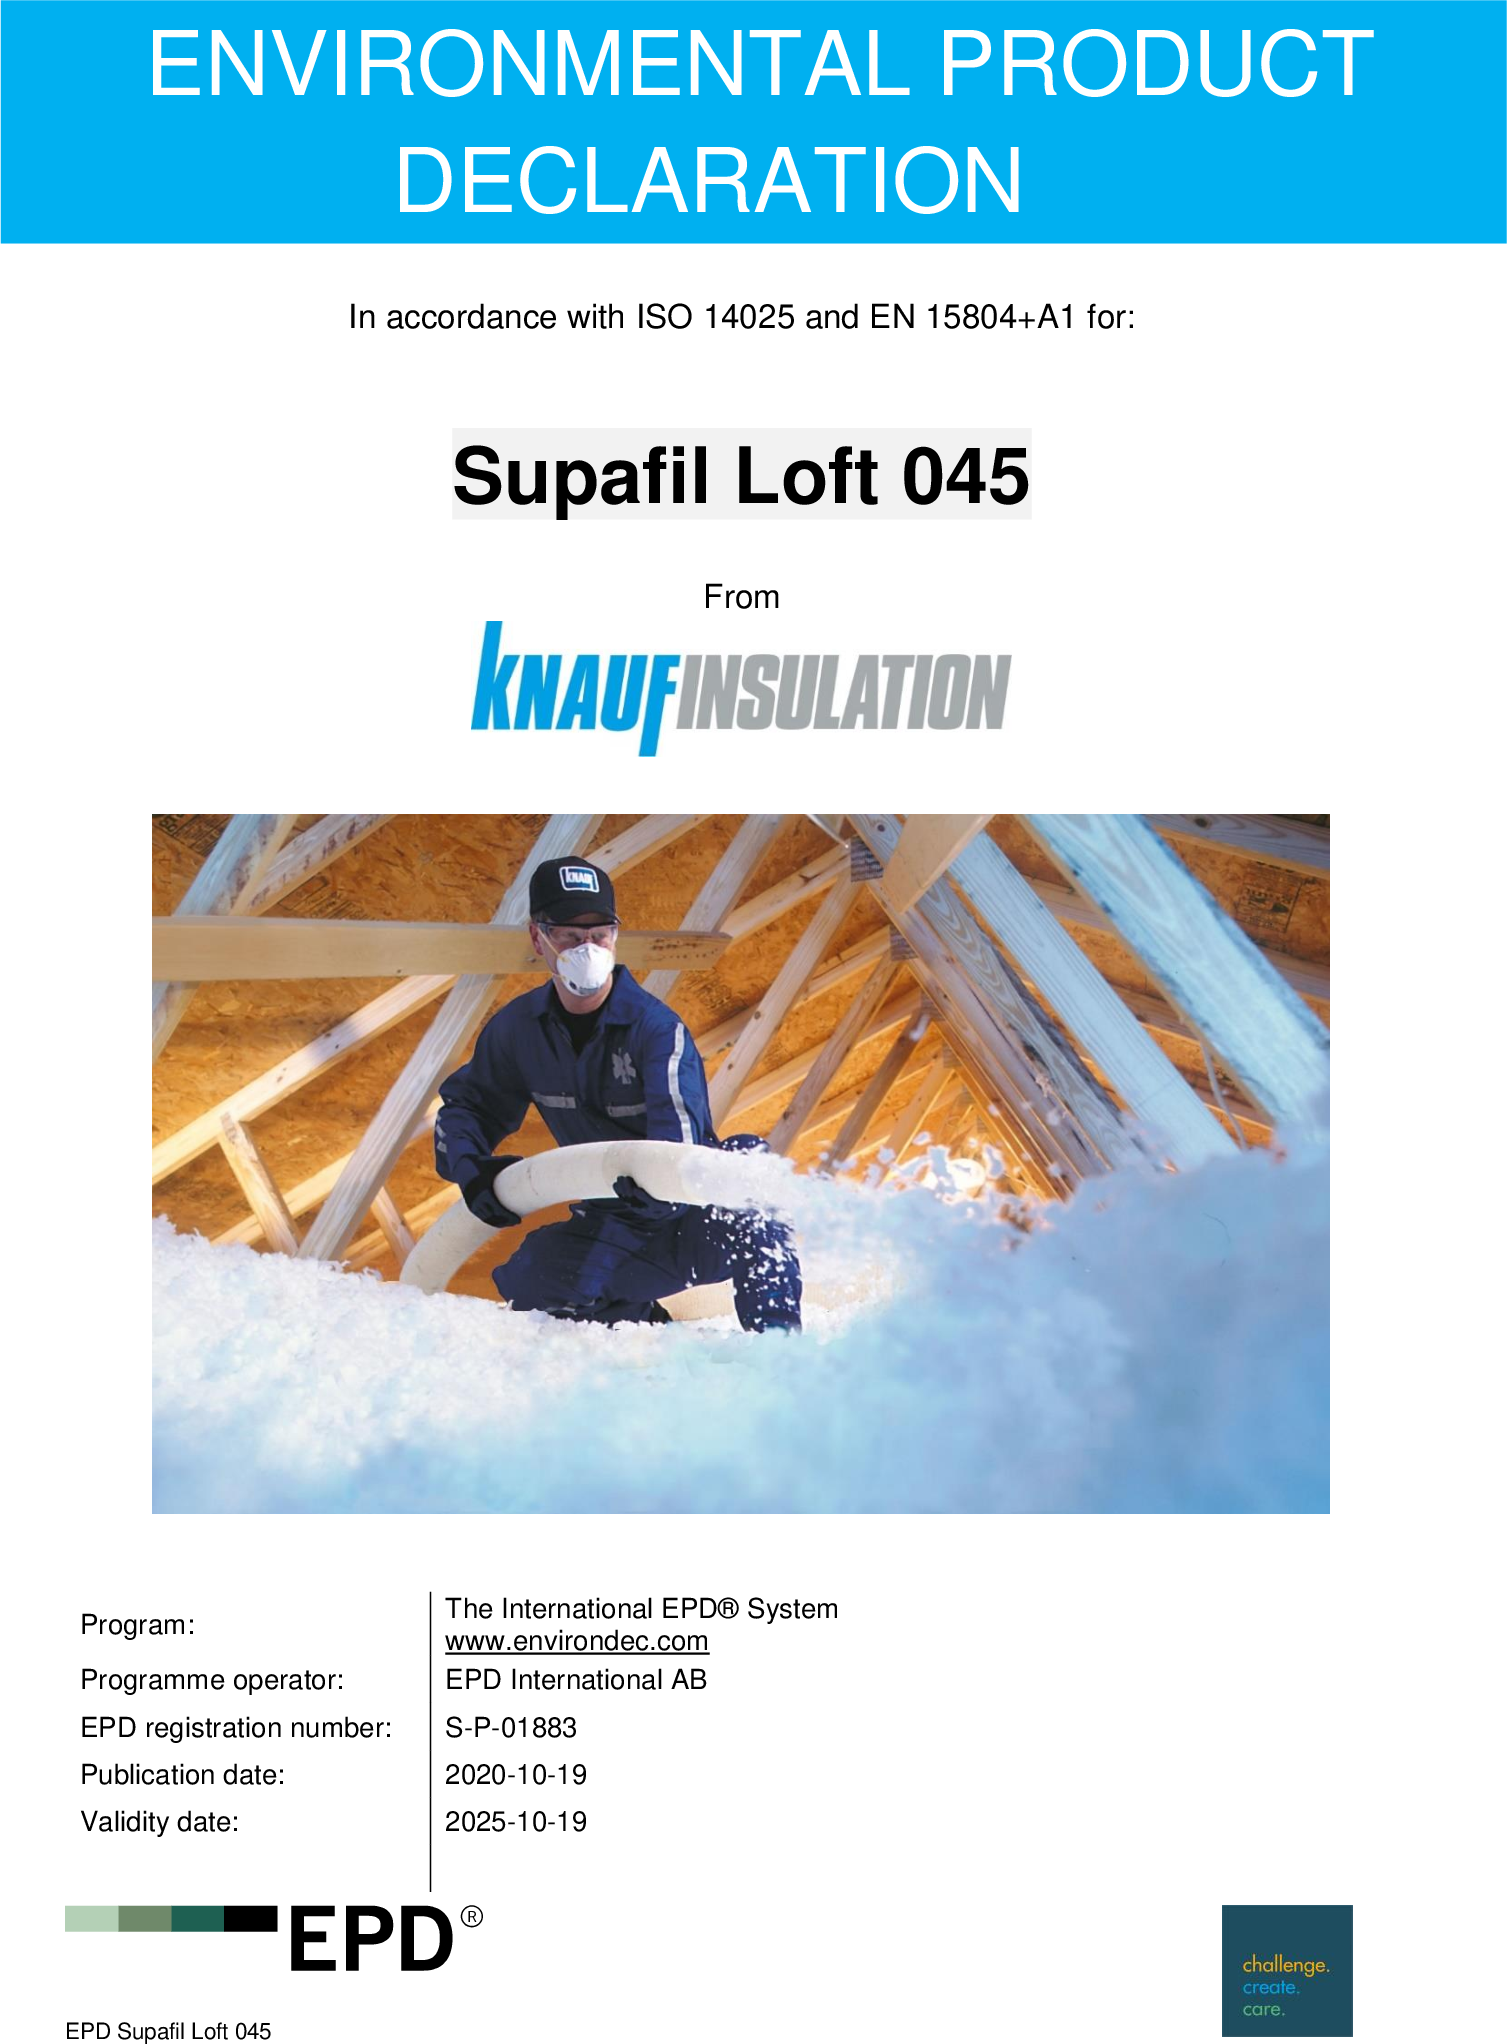 Supafil Loft 045